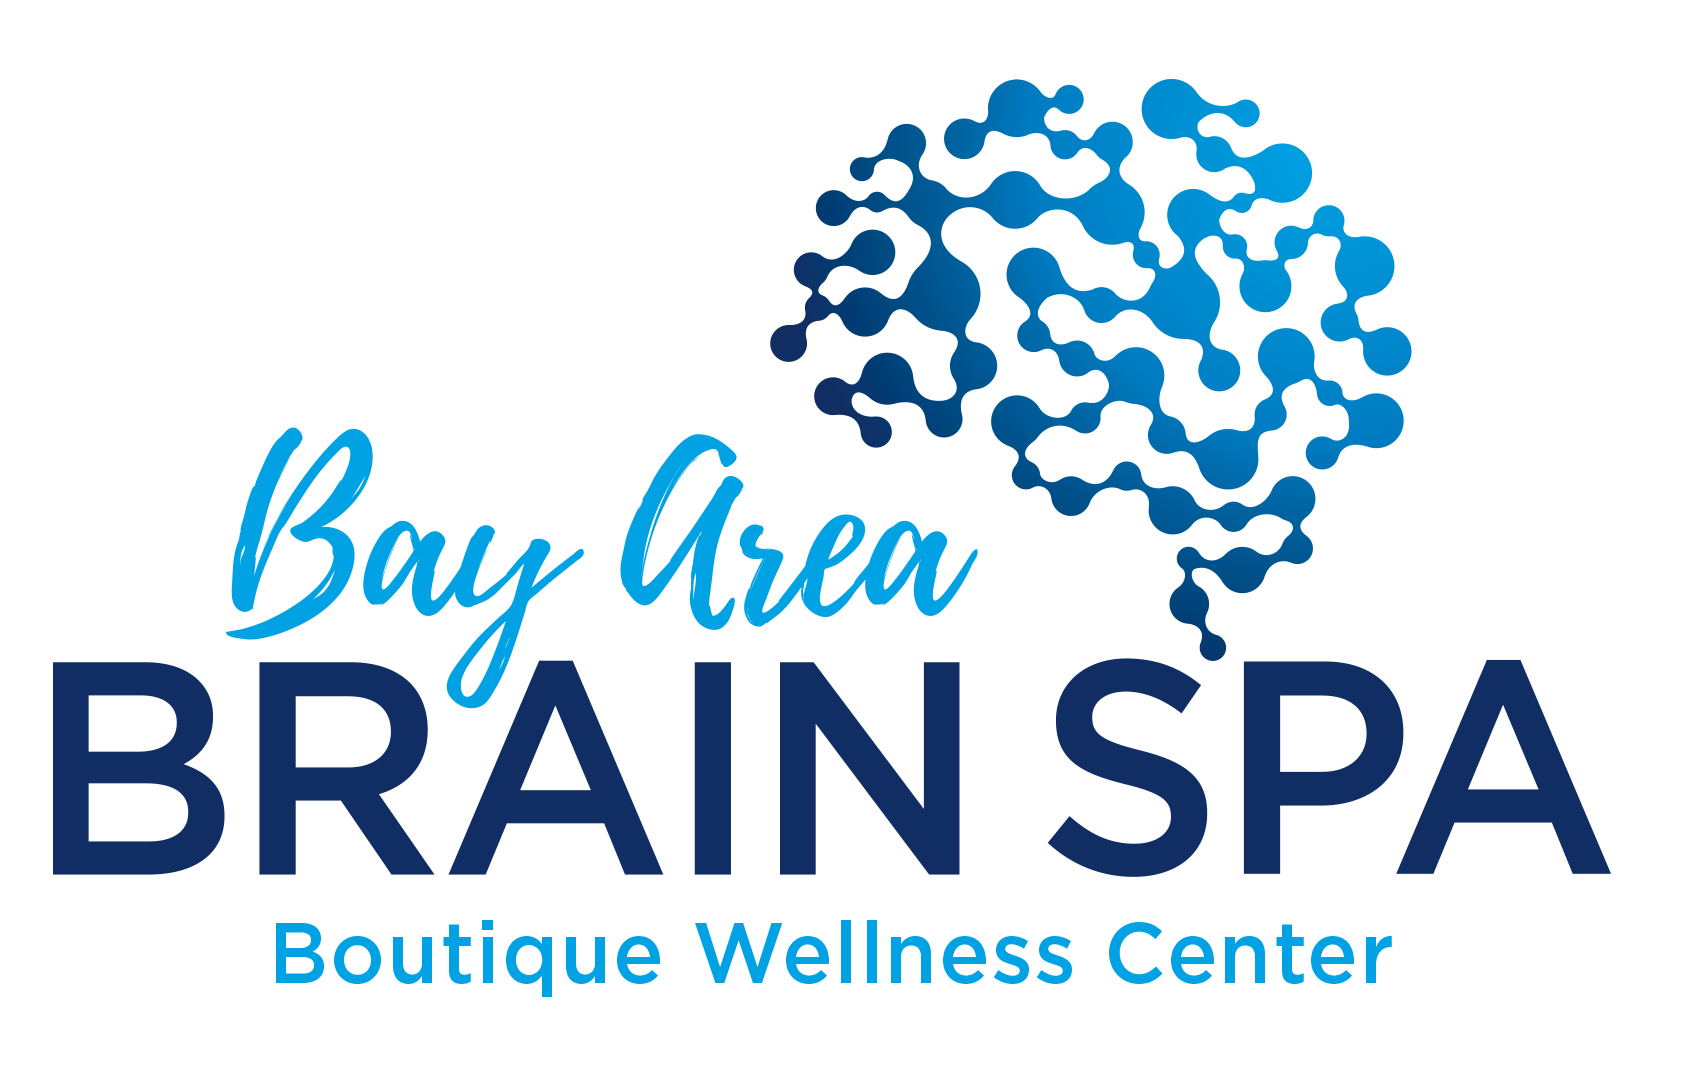 Bay Area Brain Spa